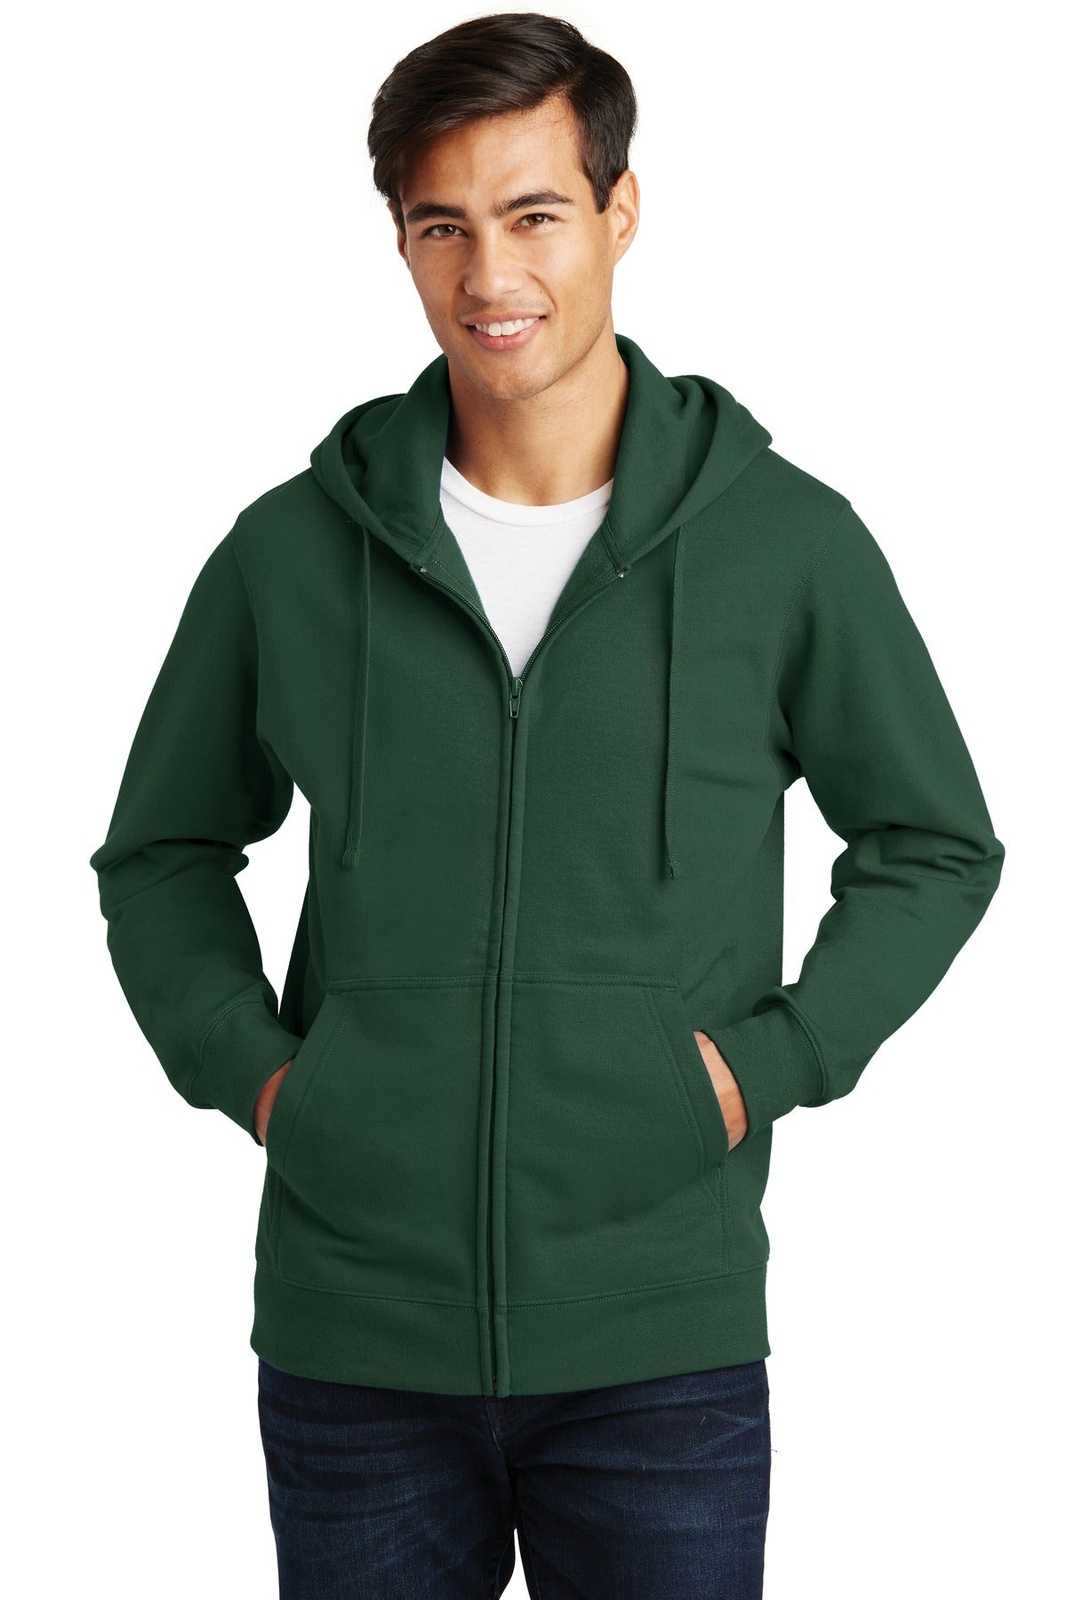 Port & Company PC850ZH Fan Favorite Fleece Full-Zip Hooded Sweatshirt - Forest Green - HIT a Double - 1